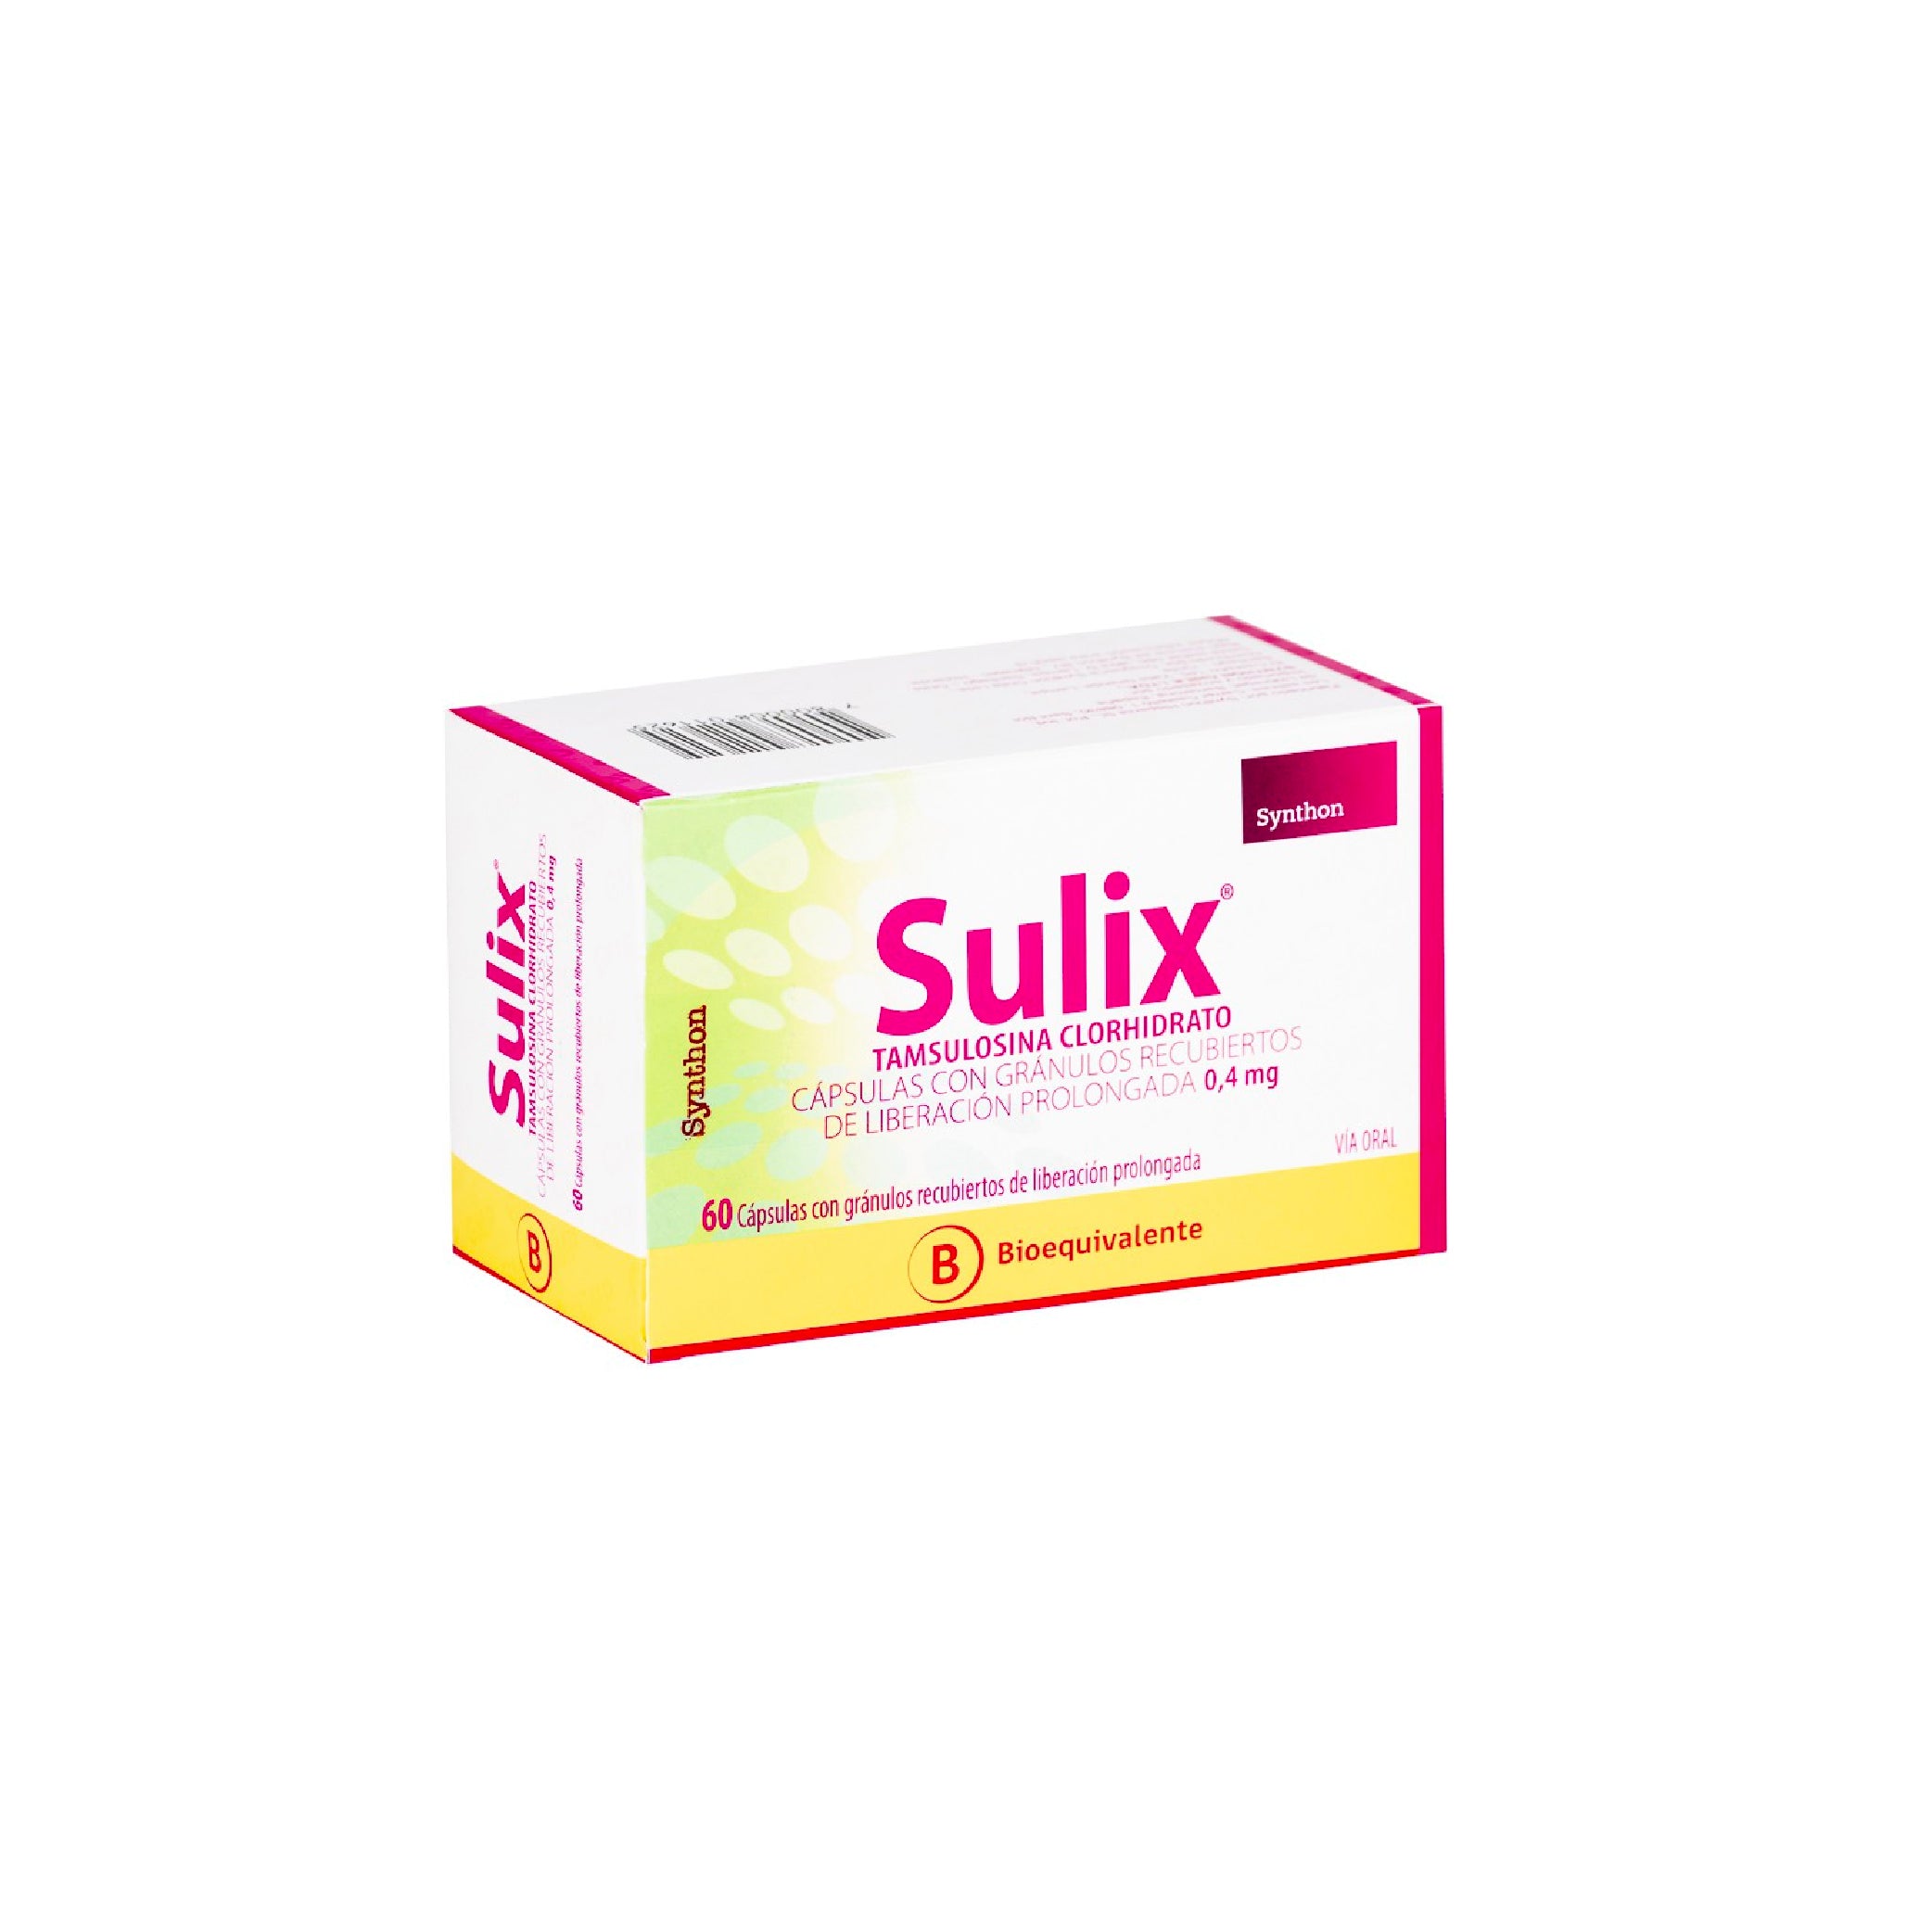 SULIX 0.4mg Caps. x 60